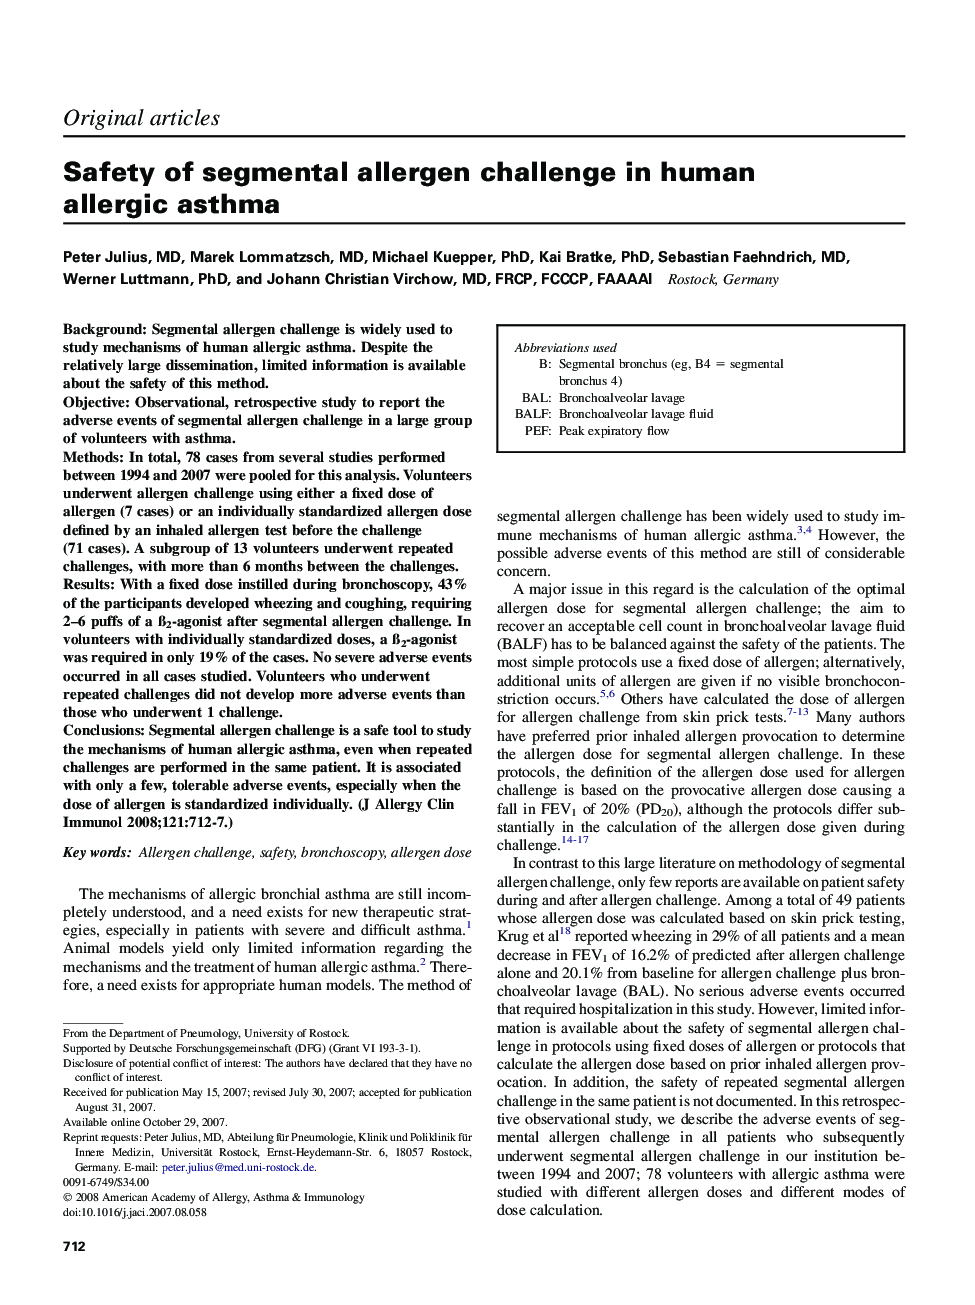 Safety of segmental allergen challenge in human allergic asthma 